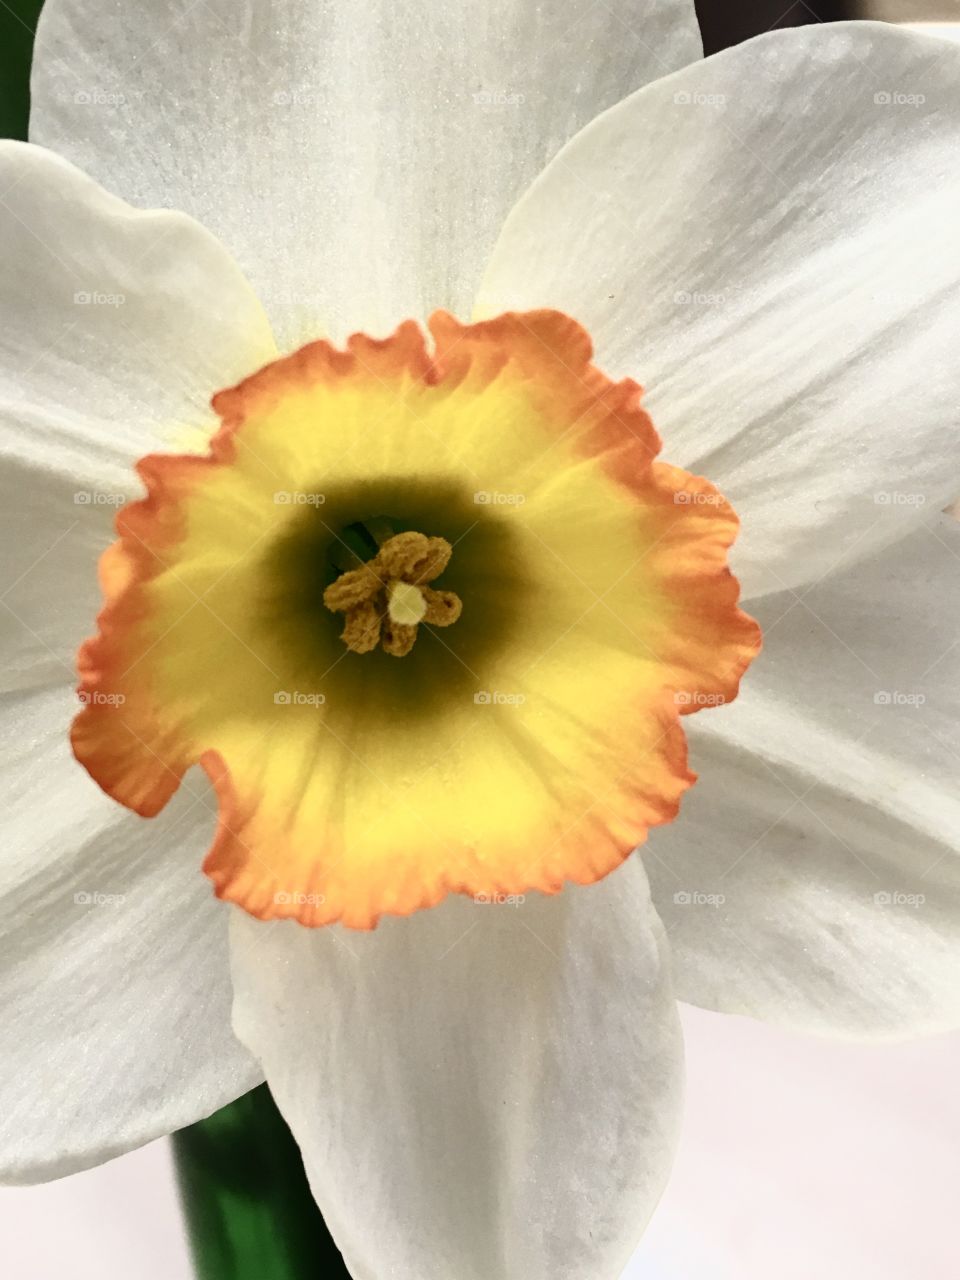 The daffodil 